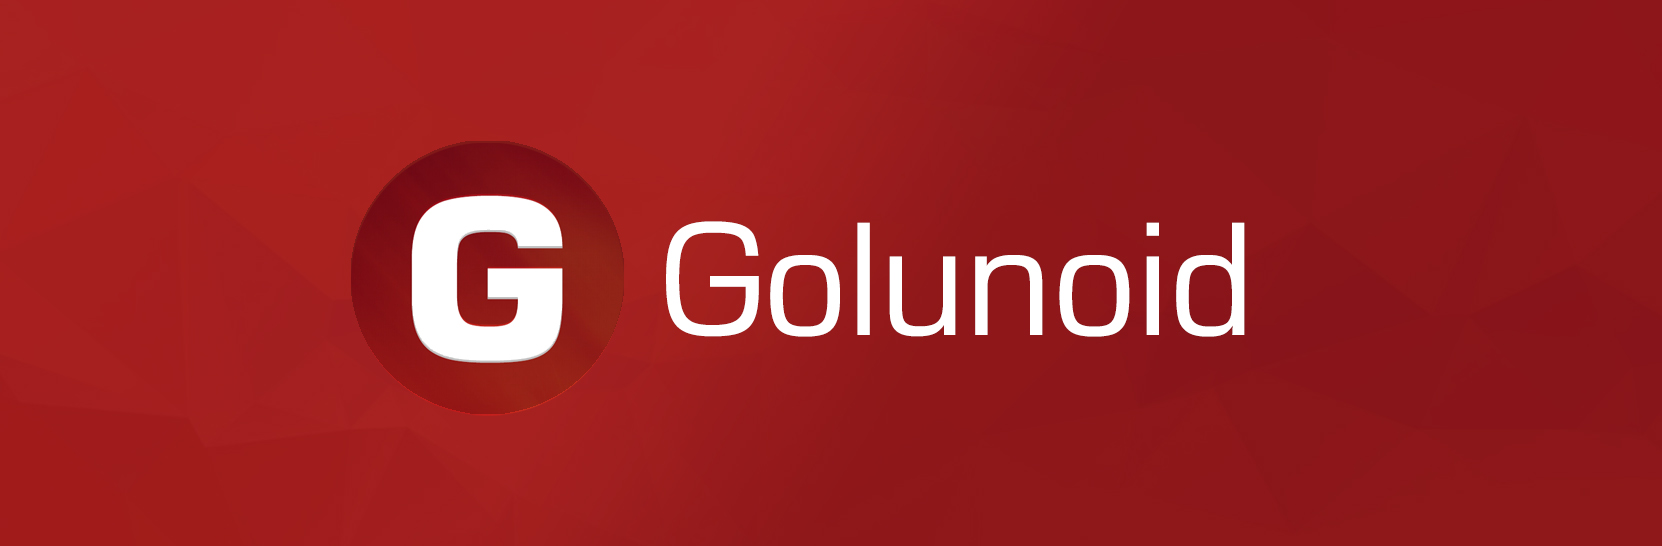 Новости космоса на Golunoid